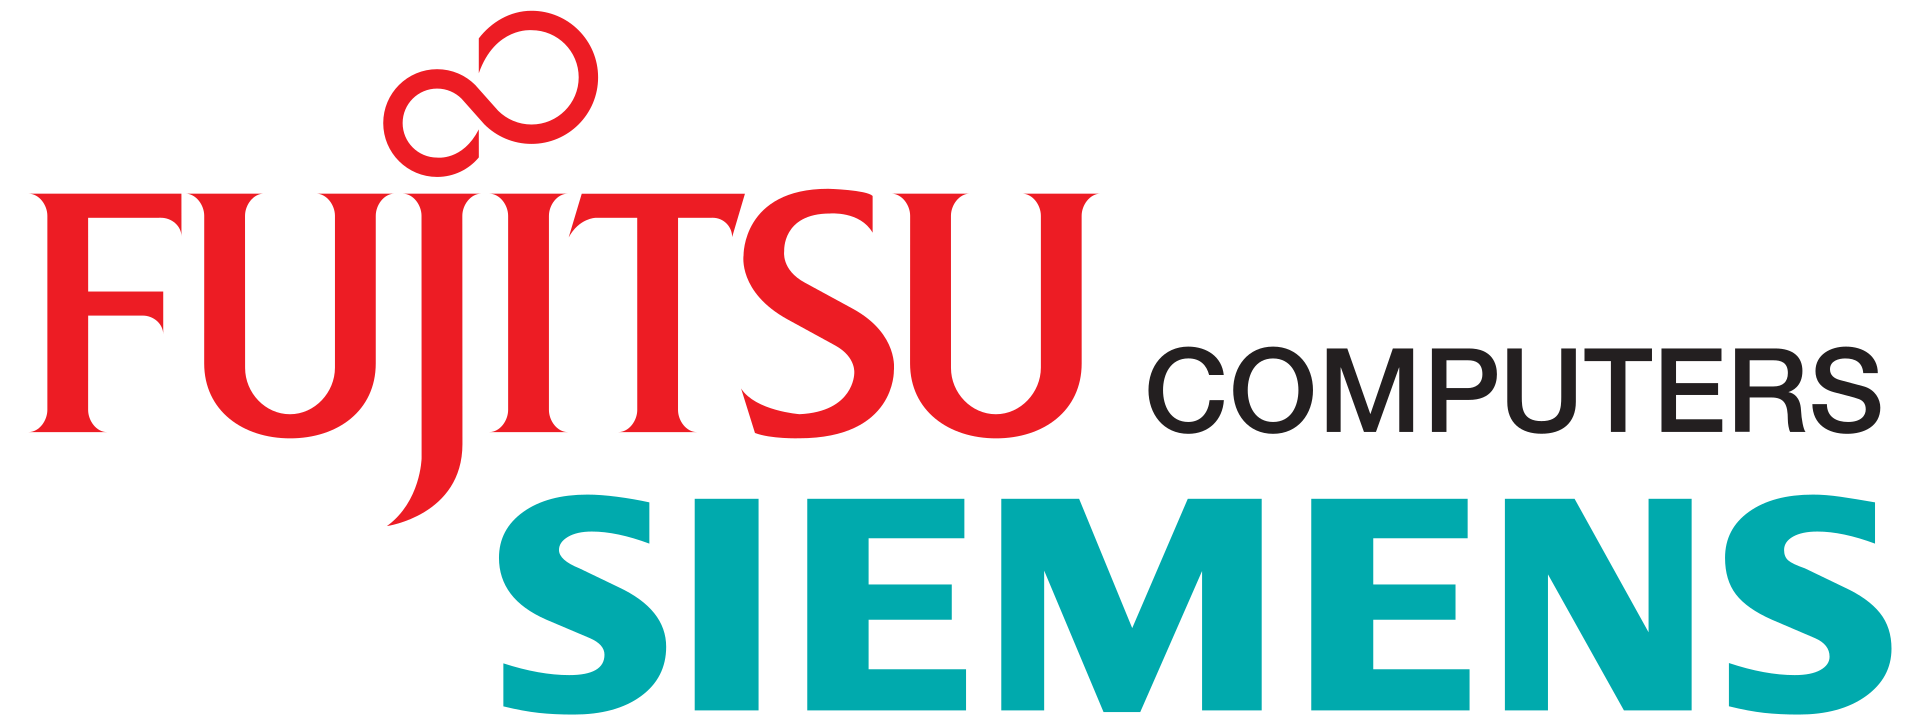 FTS - Fujitsu Siemens Computers - Fujitsu Technology Solutions - Fujitsu Technology Group - Fujitsu Technology Systems - Fujitsu Computers - Fujitsu Computer Systems - Fujitsu Computer Products